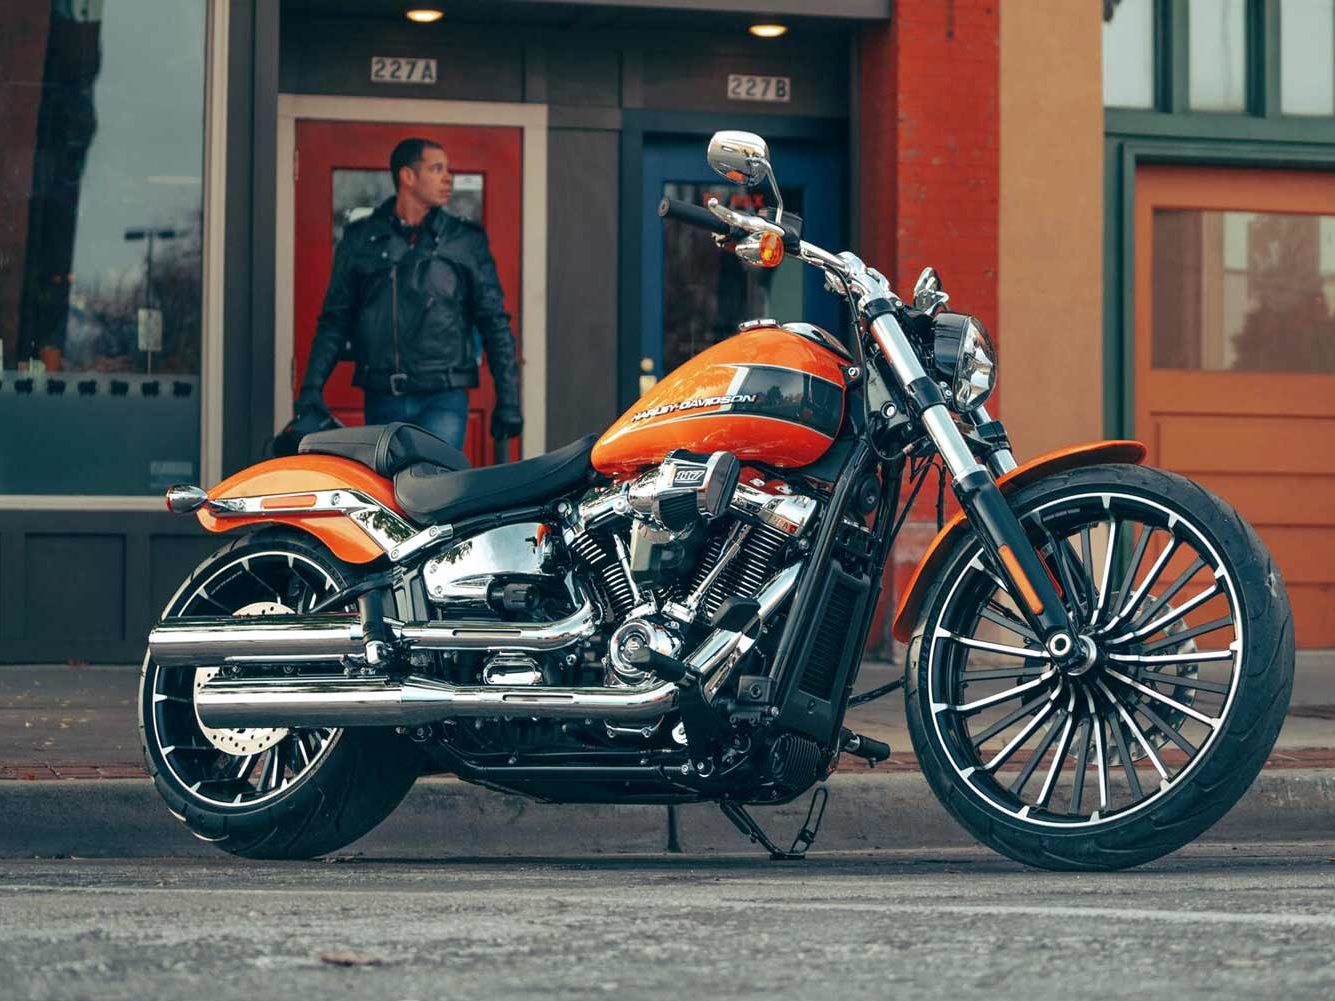 Harley Davidson Different Models